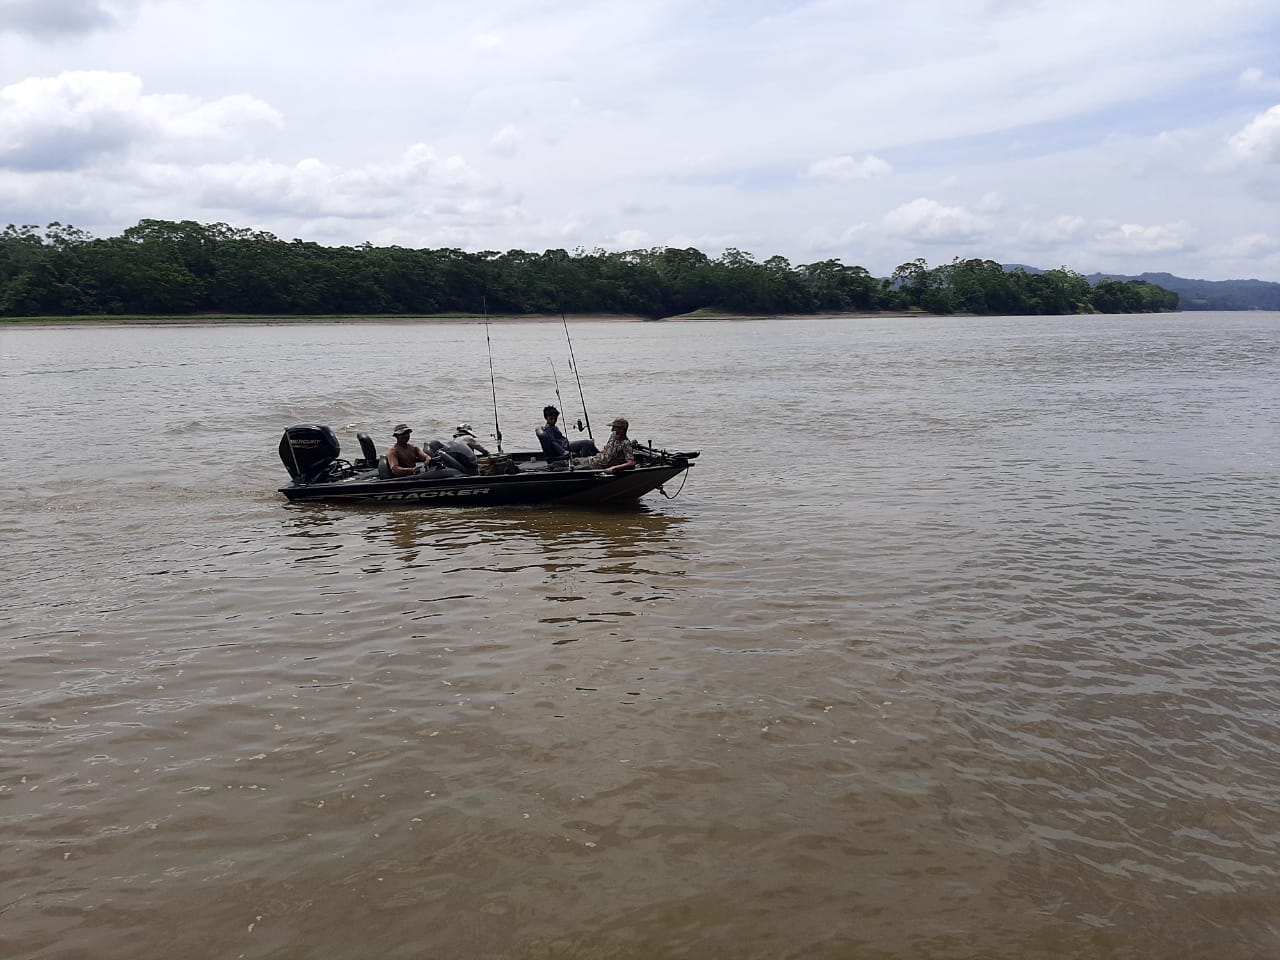 Asisten lancha varada en el río Guayabero 1